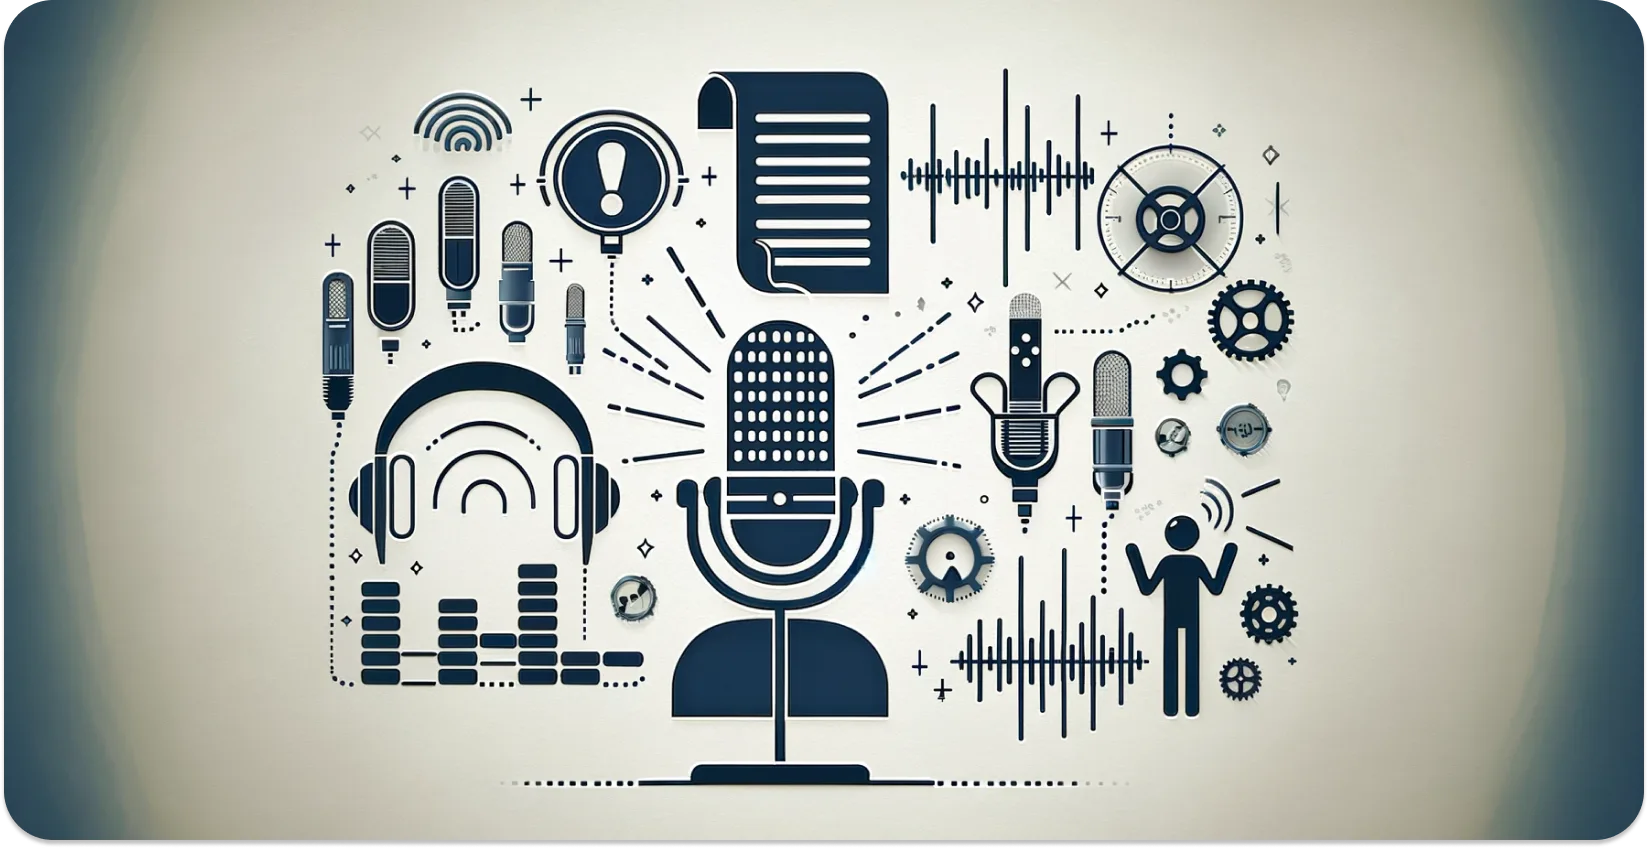 Художественное изображение микрофонов, наушников и звуковых волн, символизирующих транскрипцию звука.